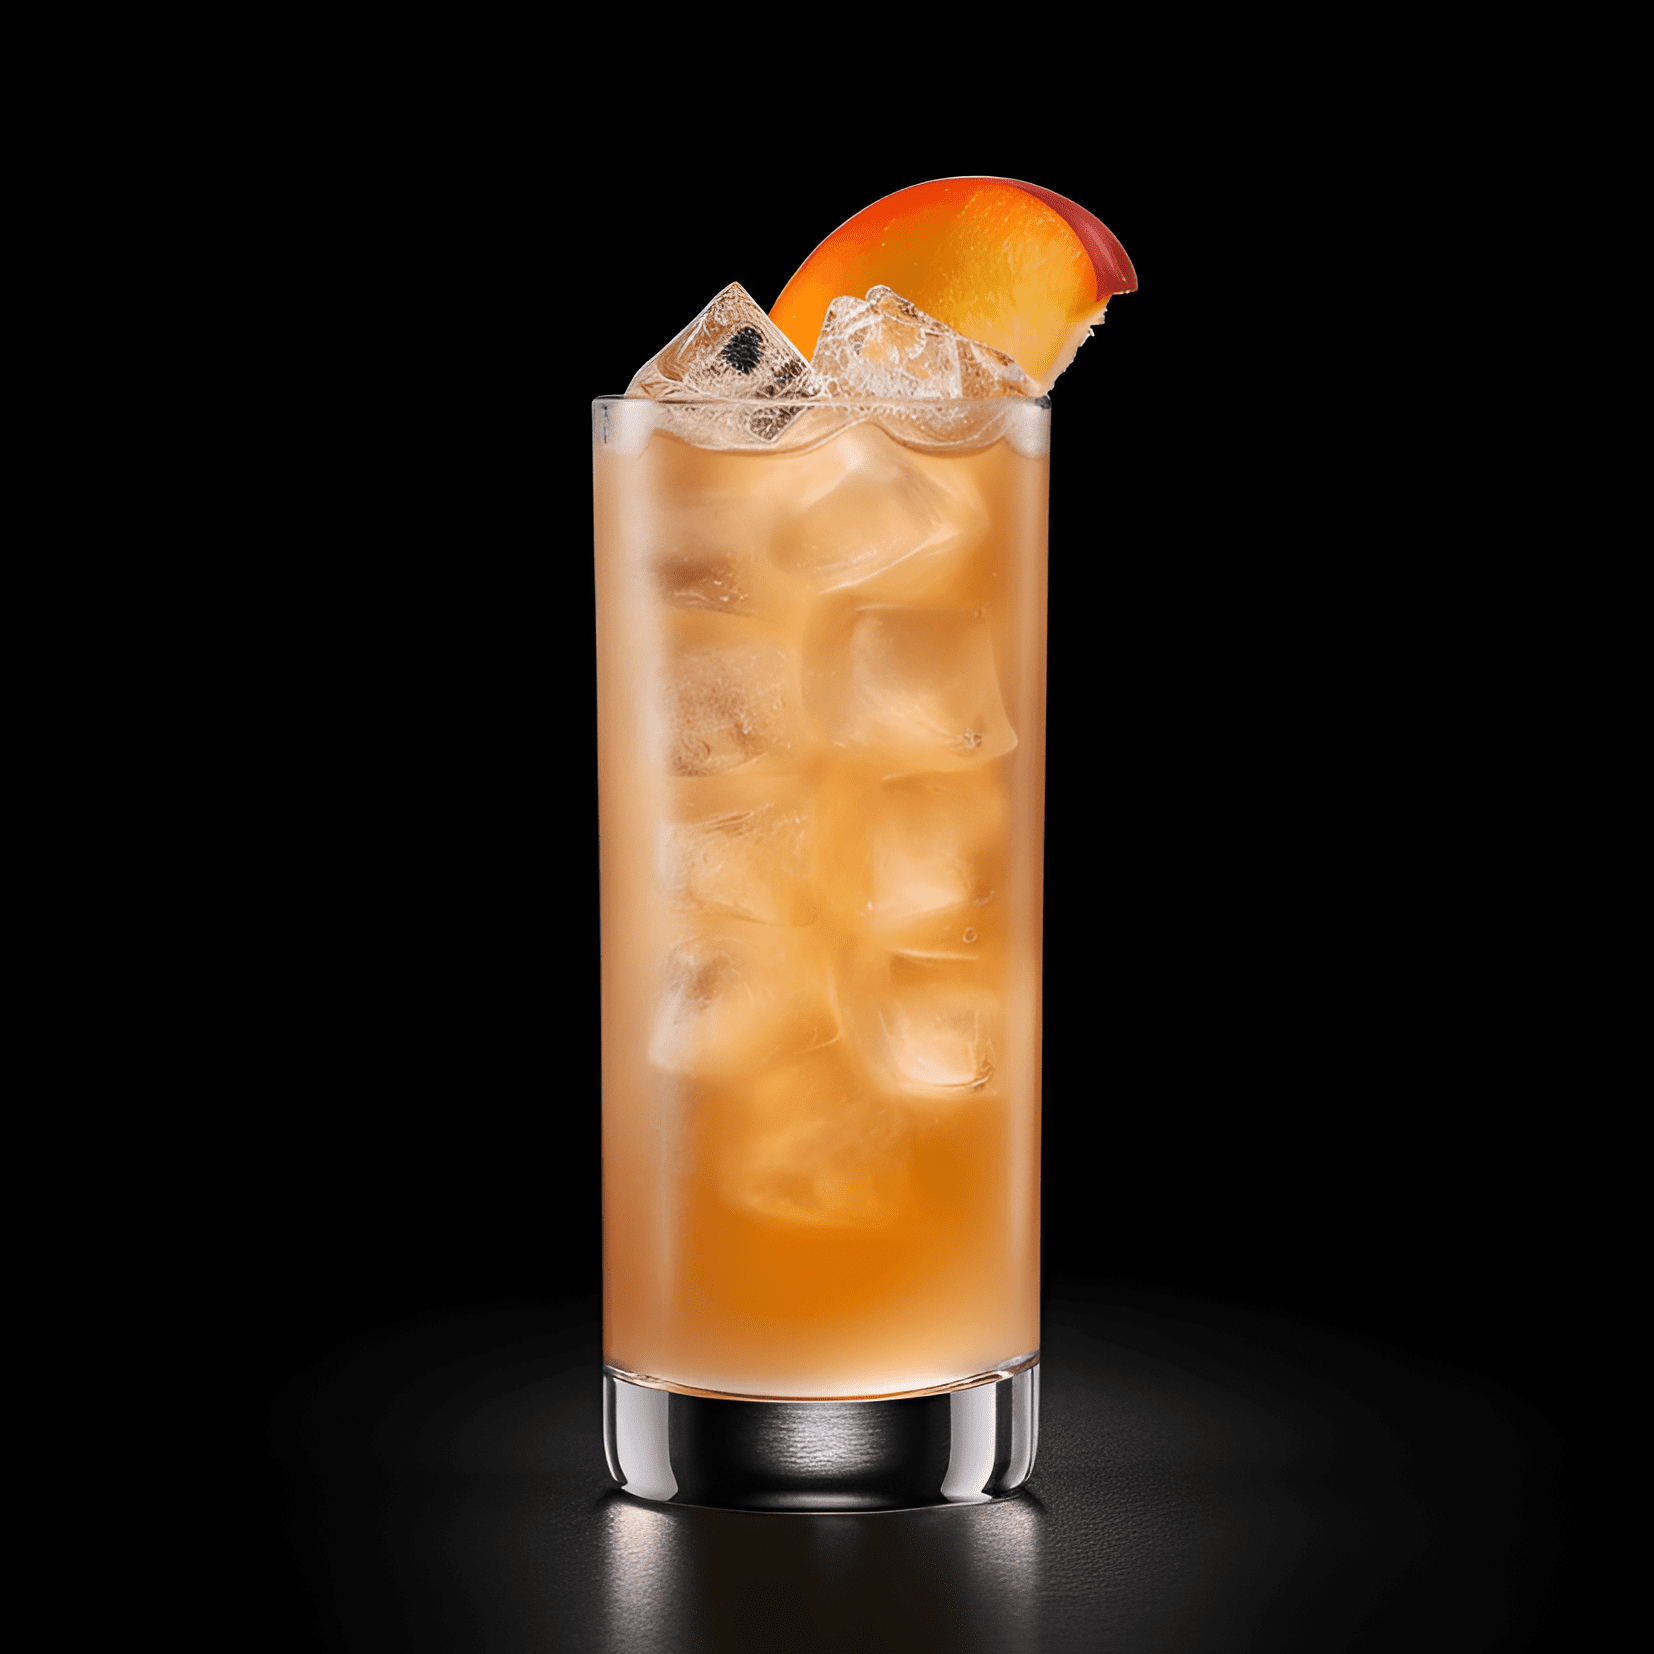 Durazno Peludo Cóctel Receta - El cóctel Peach Fuzz tiene un sabor dulce y afrutado, con un toque de acidez del jugo de lima. Es una bebida bien equilibrada que es refrescante y satisfactoria.